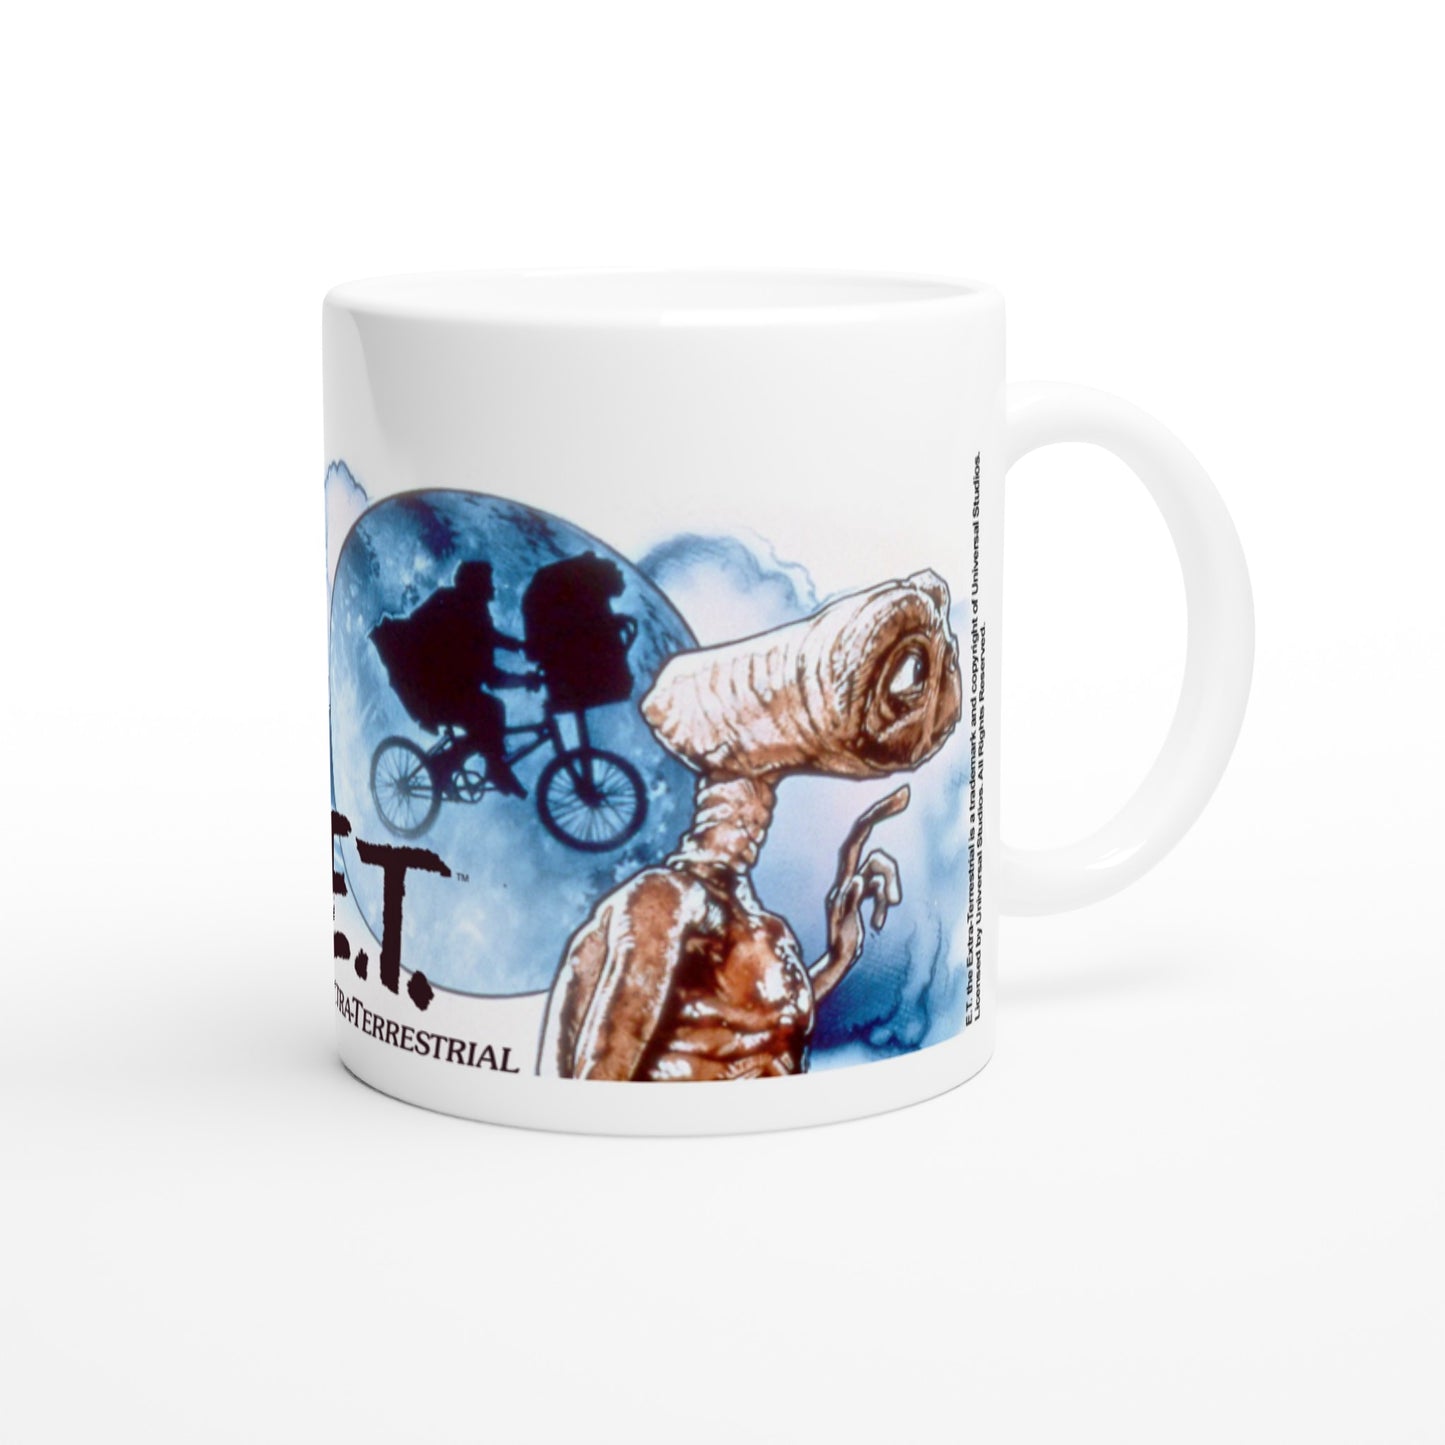 Official ET - The Extra-Terrestrial Mug - Cast logo - 330ml White Mug